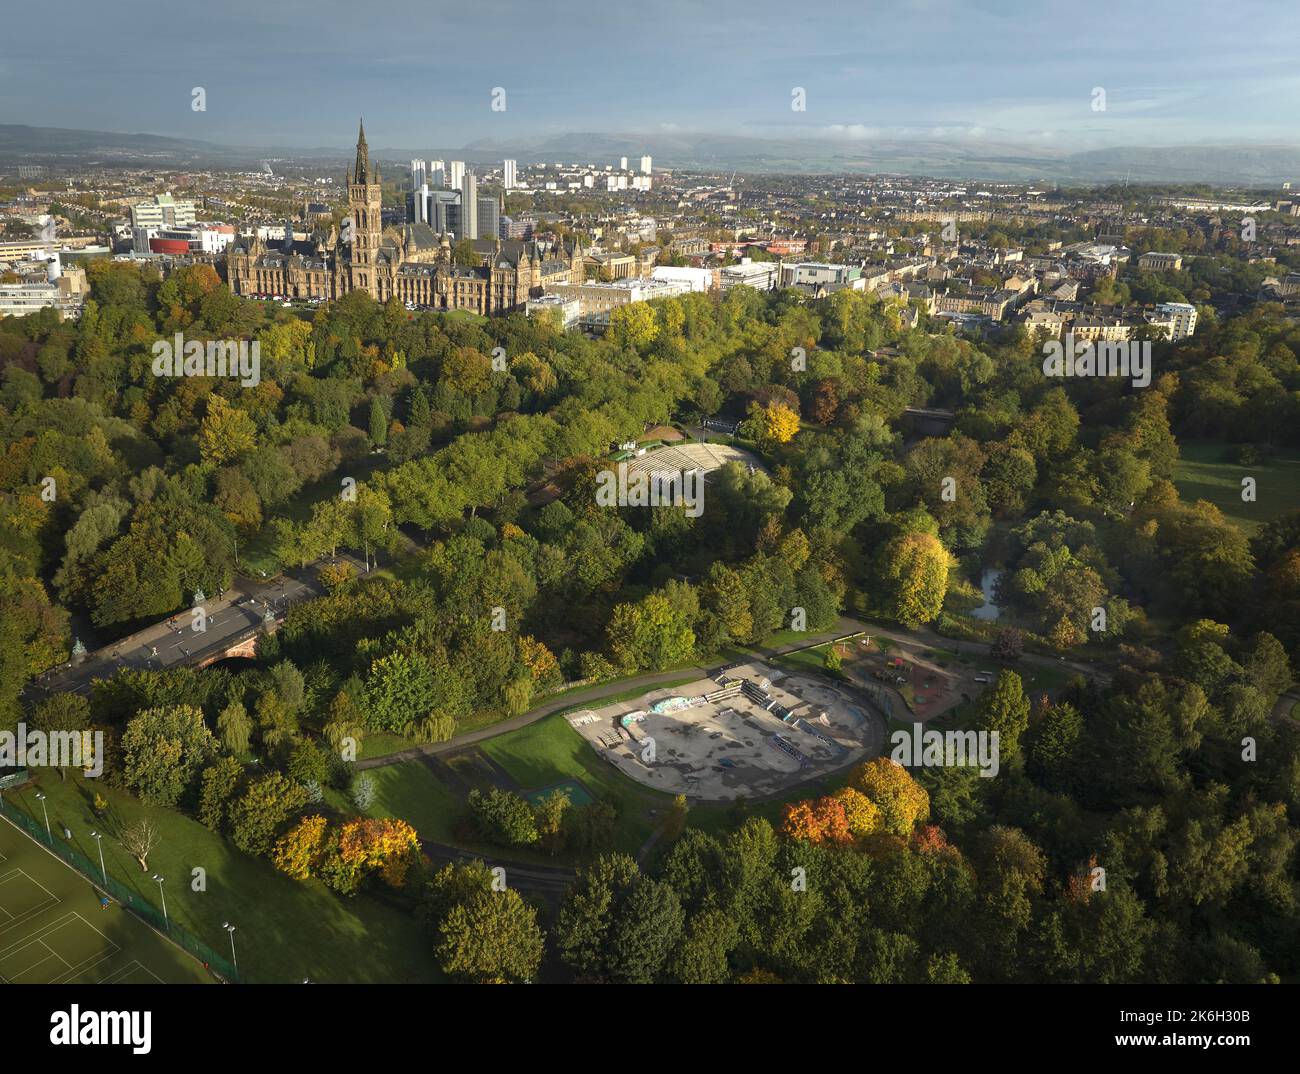 Vue aérienne de la galerie d'art et du musée Kelvingrove et de l'université de Glasgow avec le kiosque à musique et le parc à roulettes à Kelvingrove Park en un automne ensoleillé. Banque D'Images